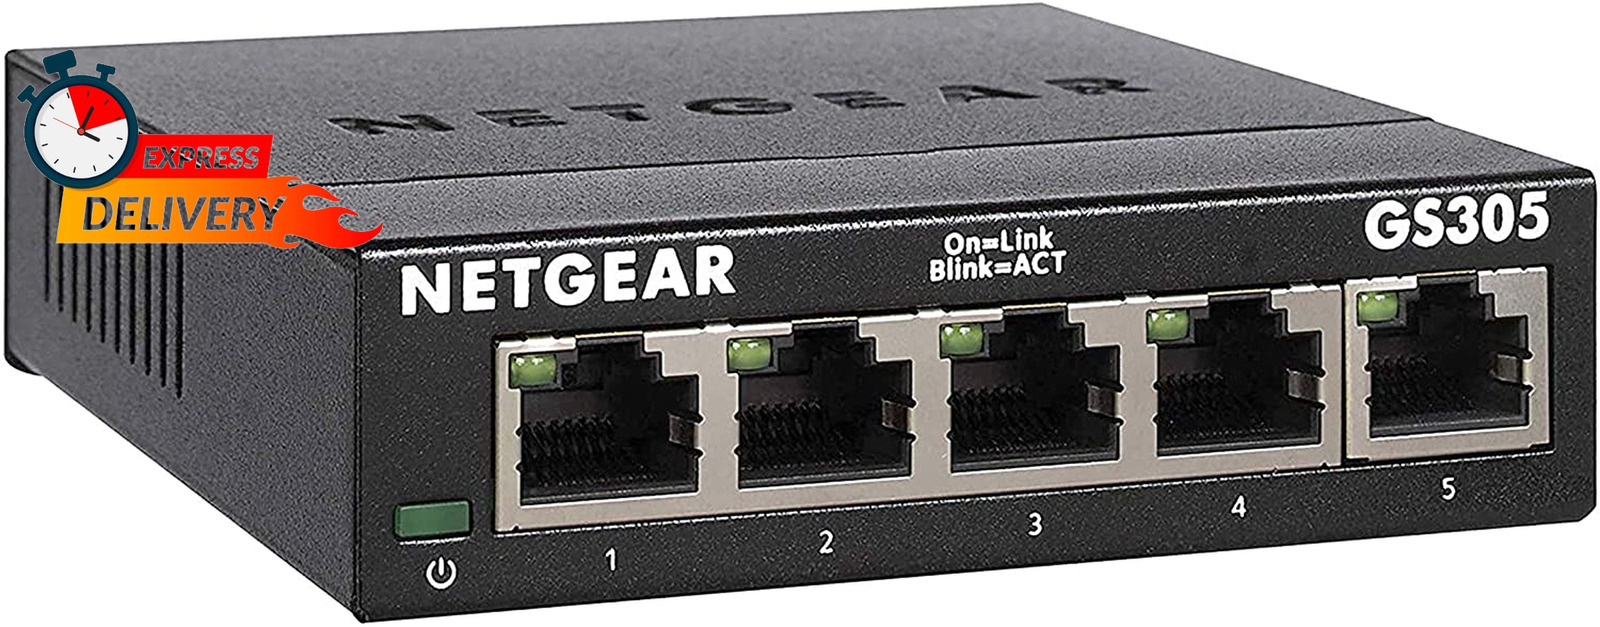 5-Port Gigabit Ethernet Unmanaged Switch (Gs305) - Desktop Quiet Fanles